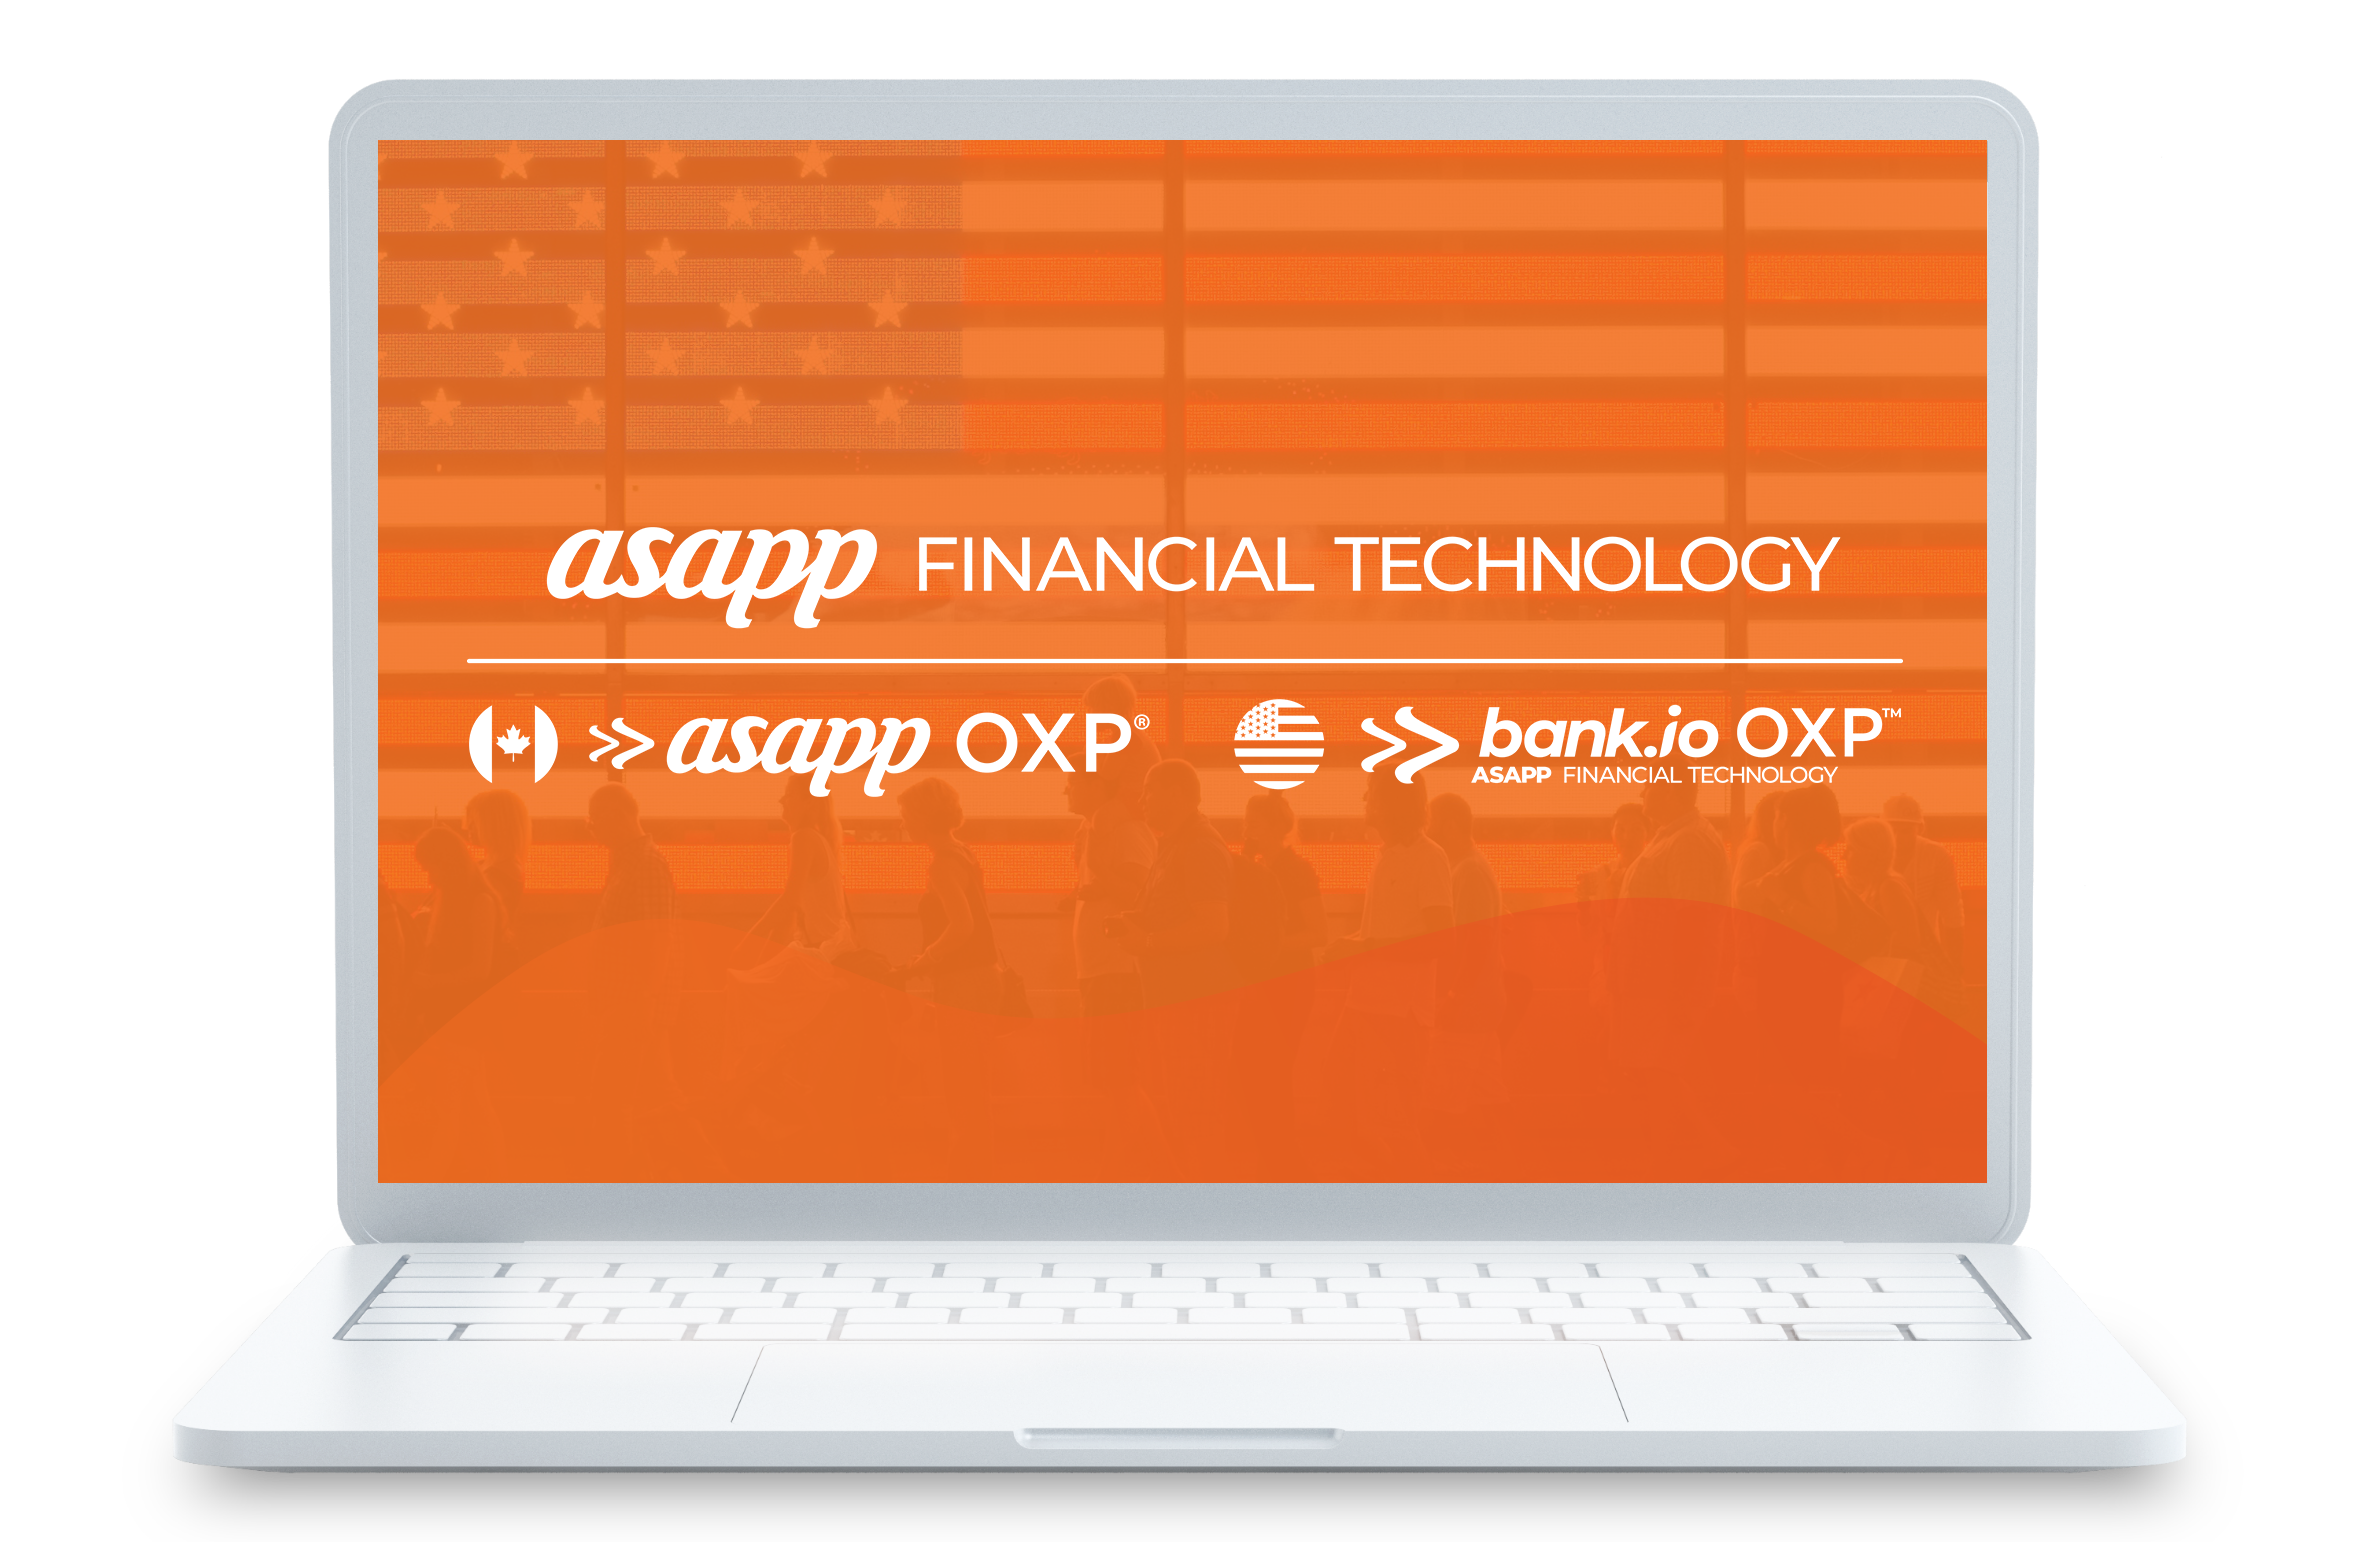 ASAPP Financial Technology 